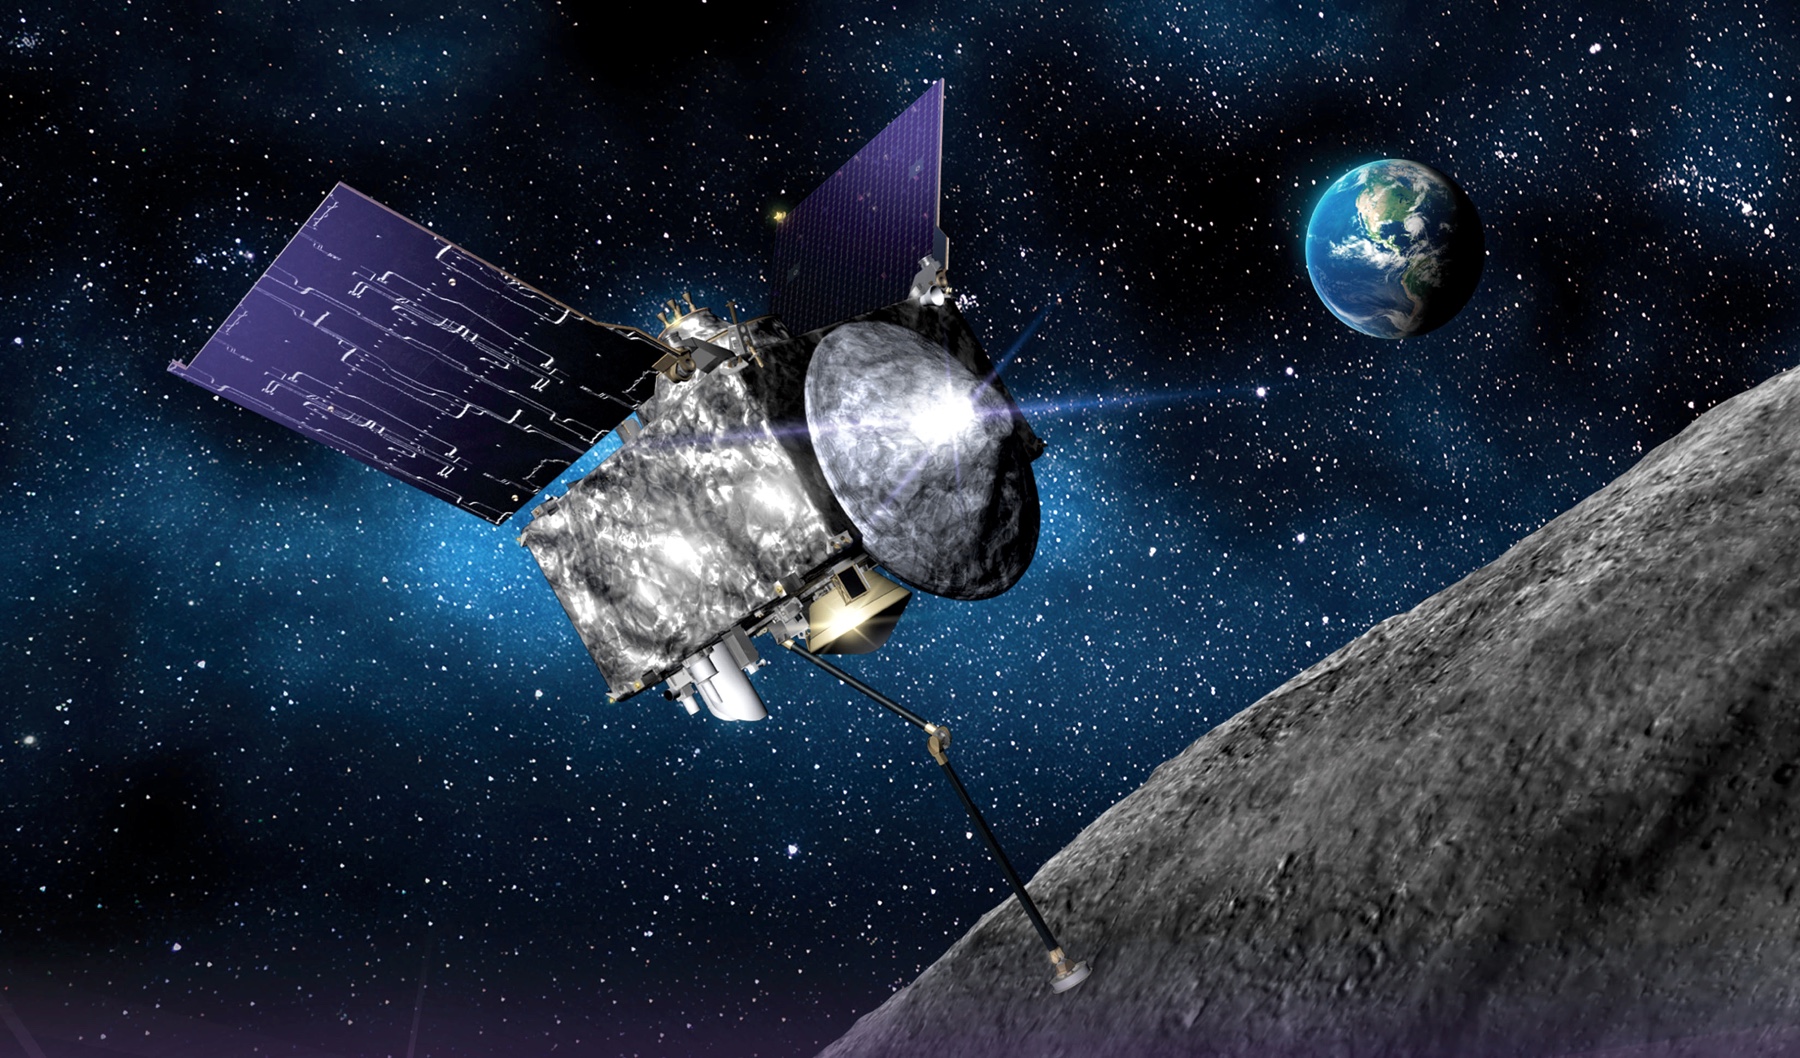 La superficie dell'asteroide su cui è atterrata la sonda OSIRIS-REx della NASA era come una "fossa di palla di plastica